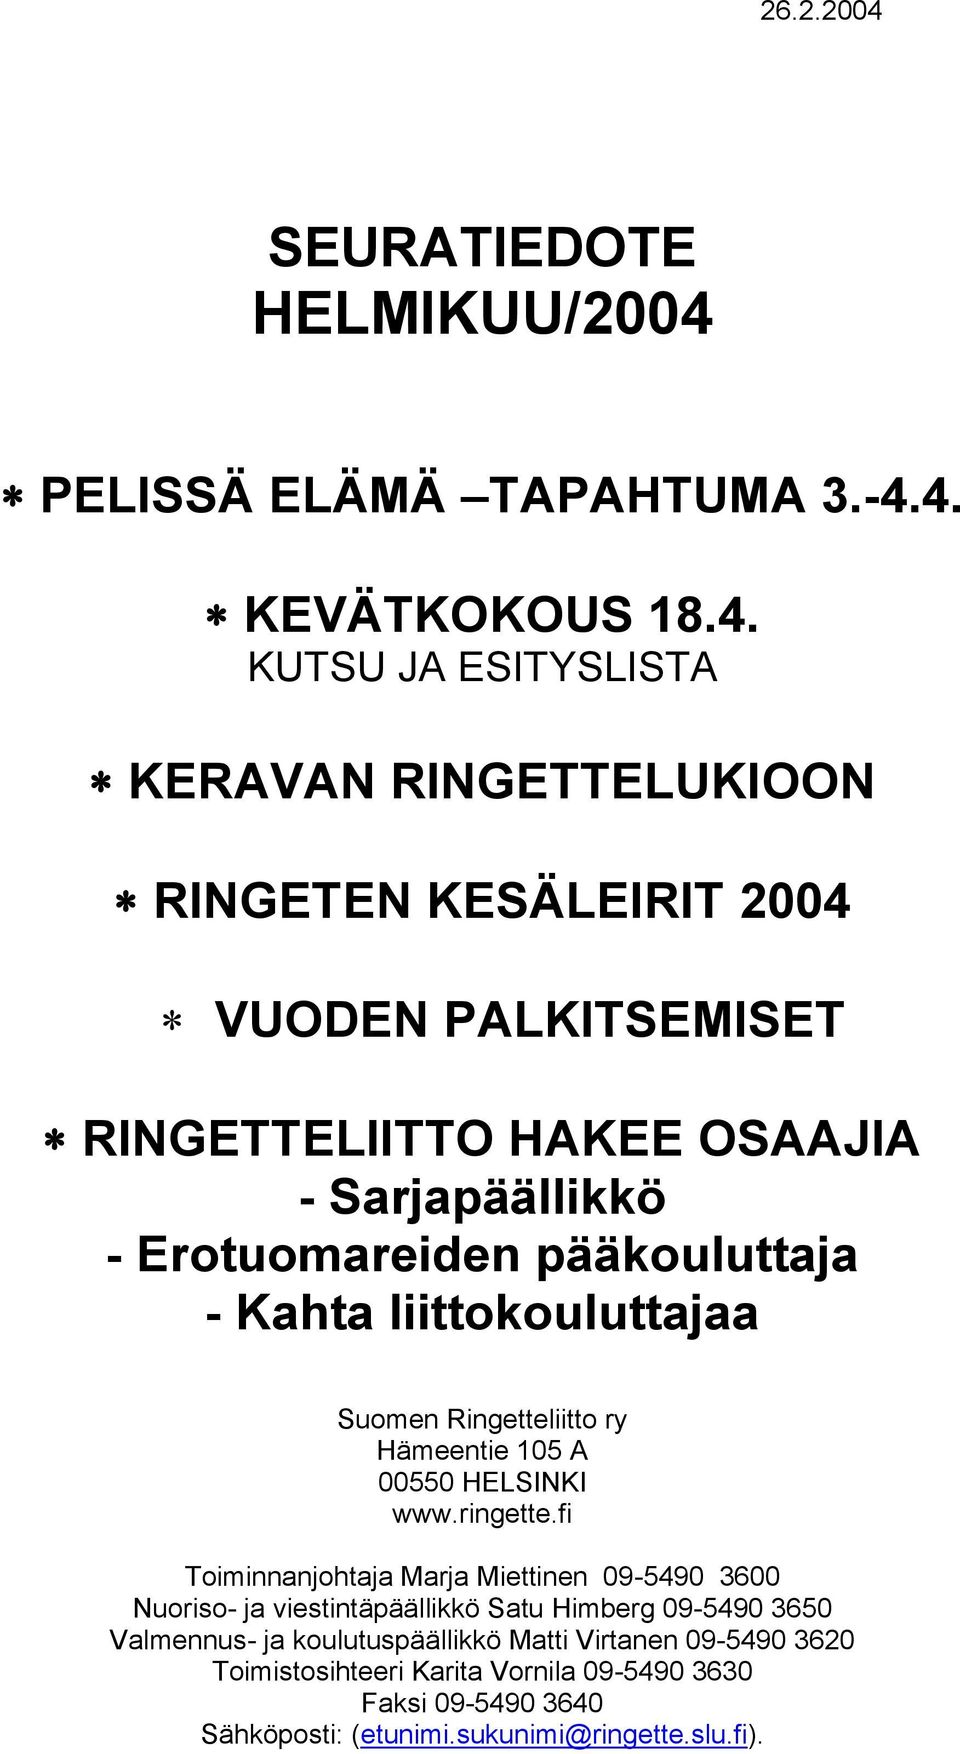 PELISSÄ ELÄMÄ TAPAHTUMA 3.-4.